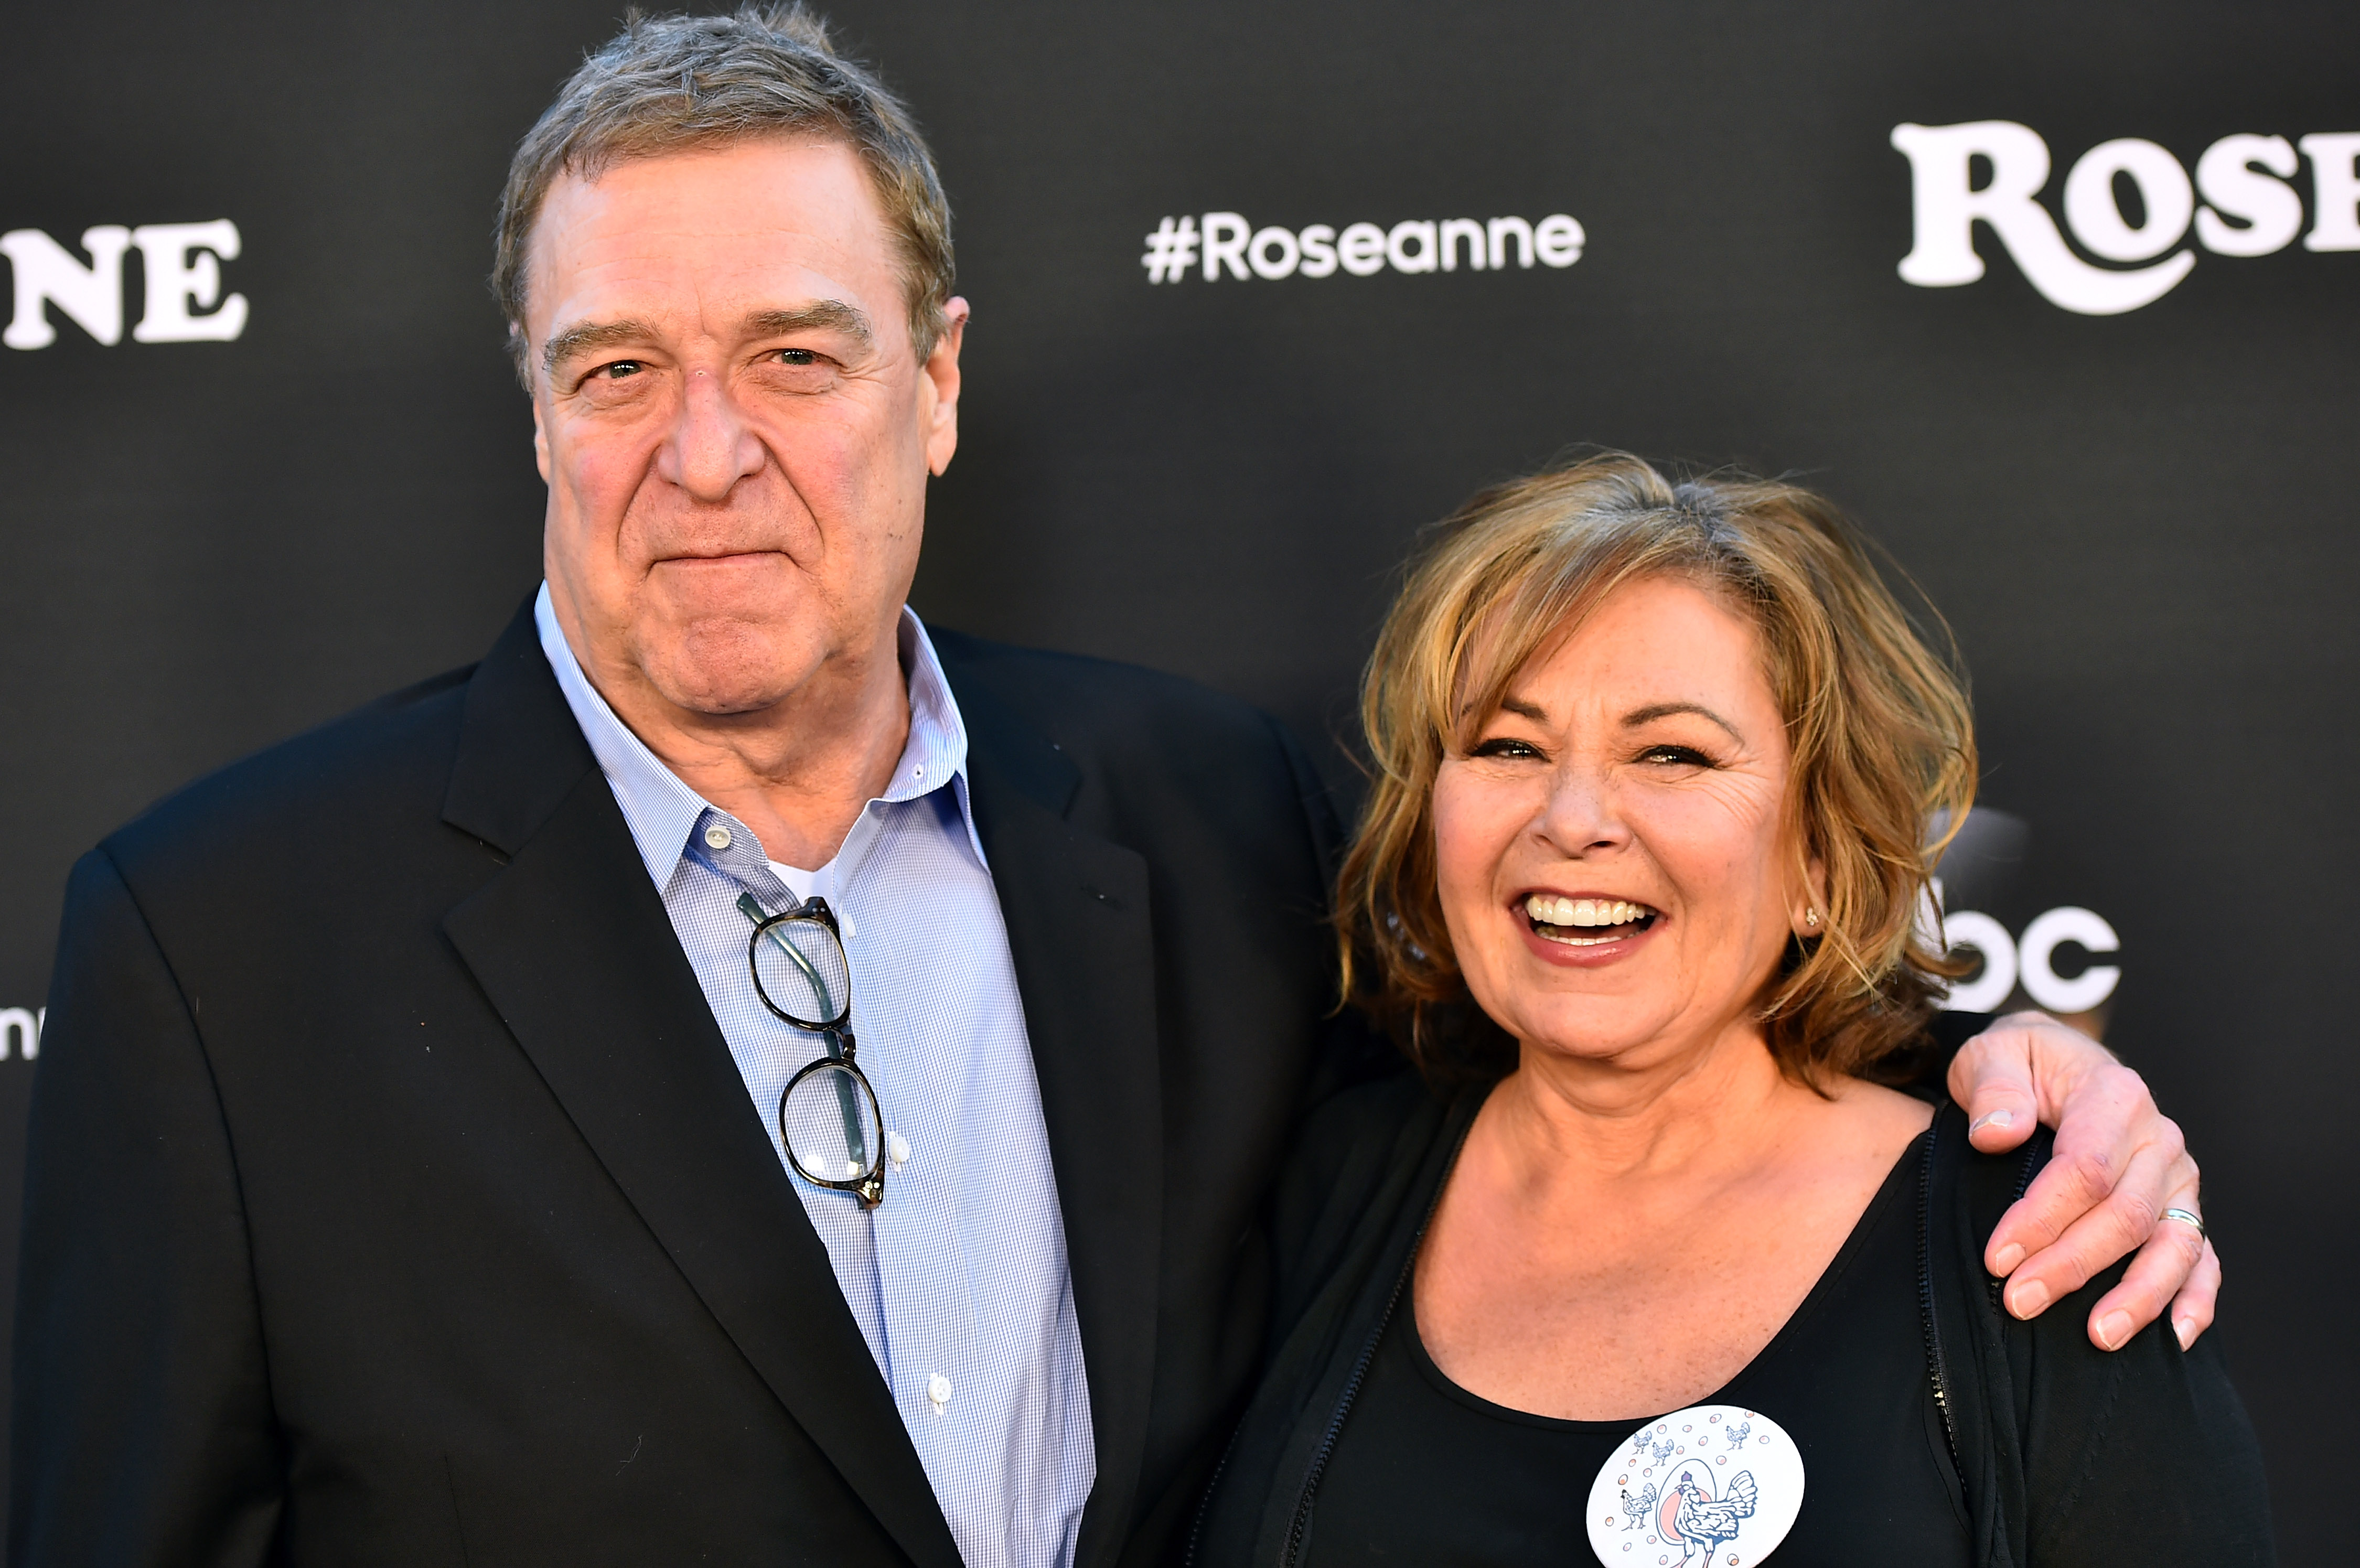 John Goodman y Roseanne Barr asisten al estreno de "Roseanne" de ABC en Walt Disney Studio Lot el 23 de marzo de 2018, en Burbank, California. | Foto: Getty Images